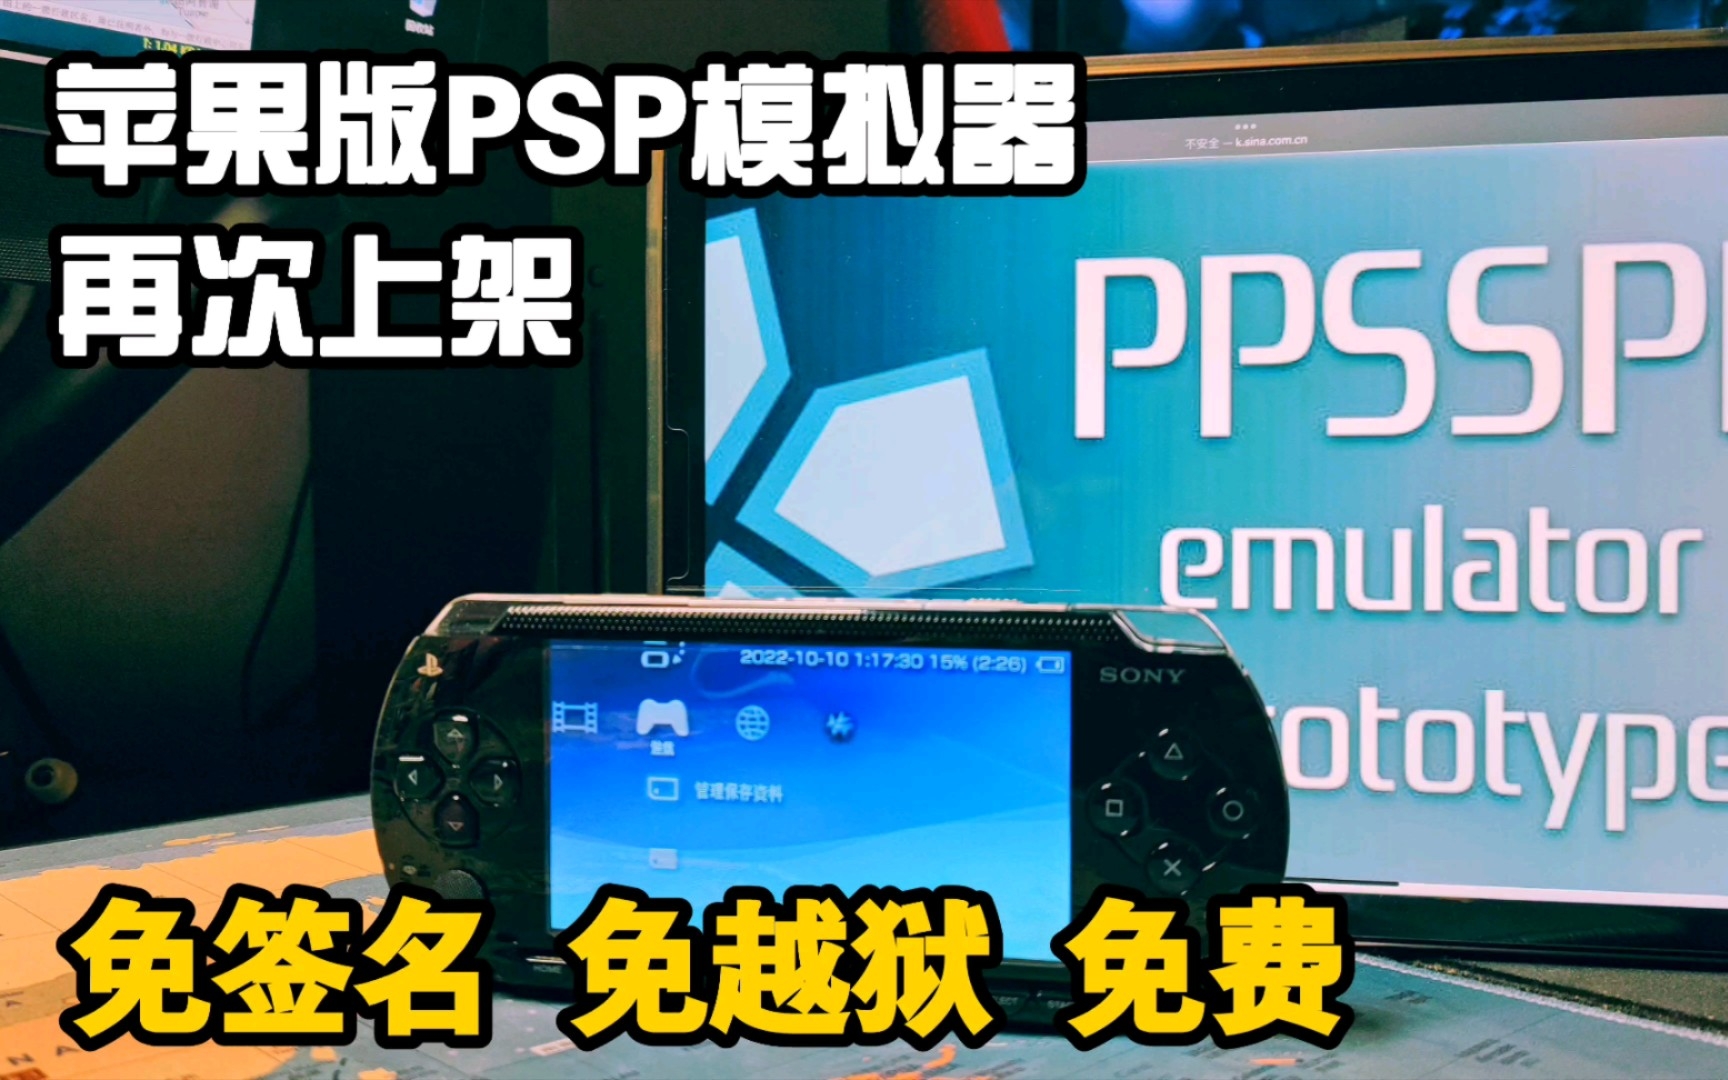 苹果设备 iOS系统 PSP模拟器 PPSSPP  手机 iPad玩PSP 免越狱 免签名 免费 再次上架